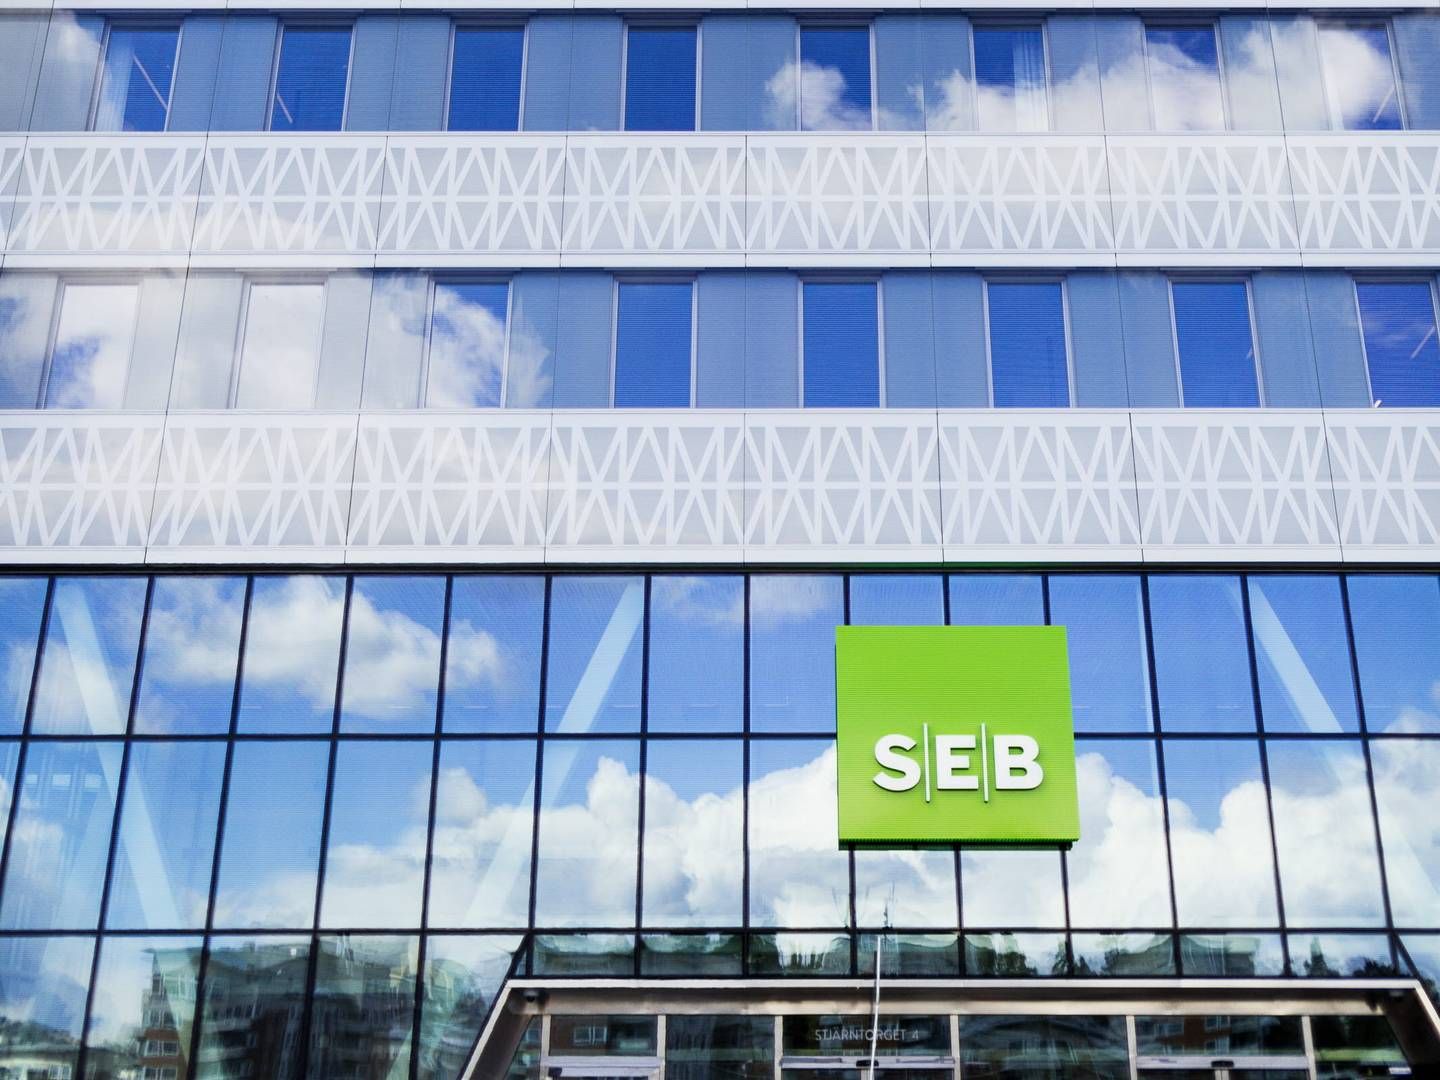 SEB's office building in Arenastaden north of Stockholm | Photo: PR/SEB